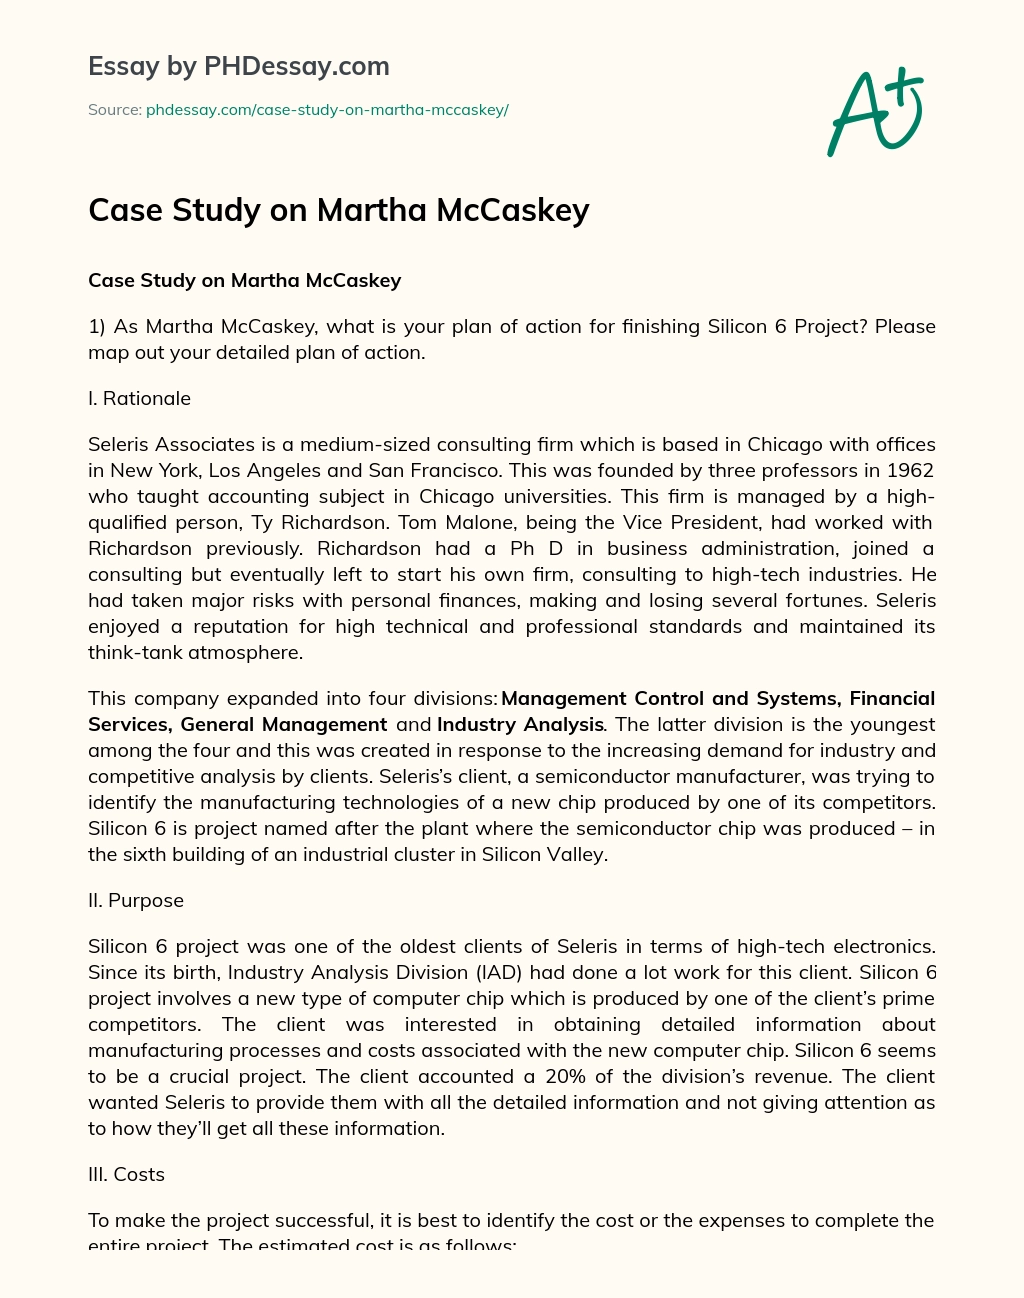 Case Study on Martha McCaskey essay